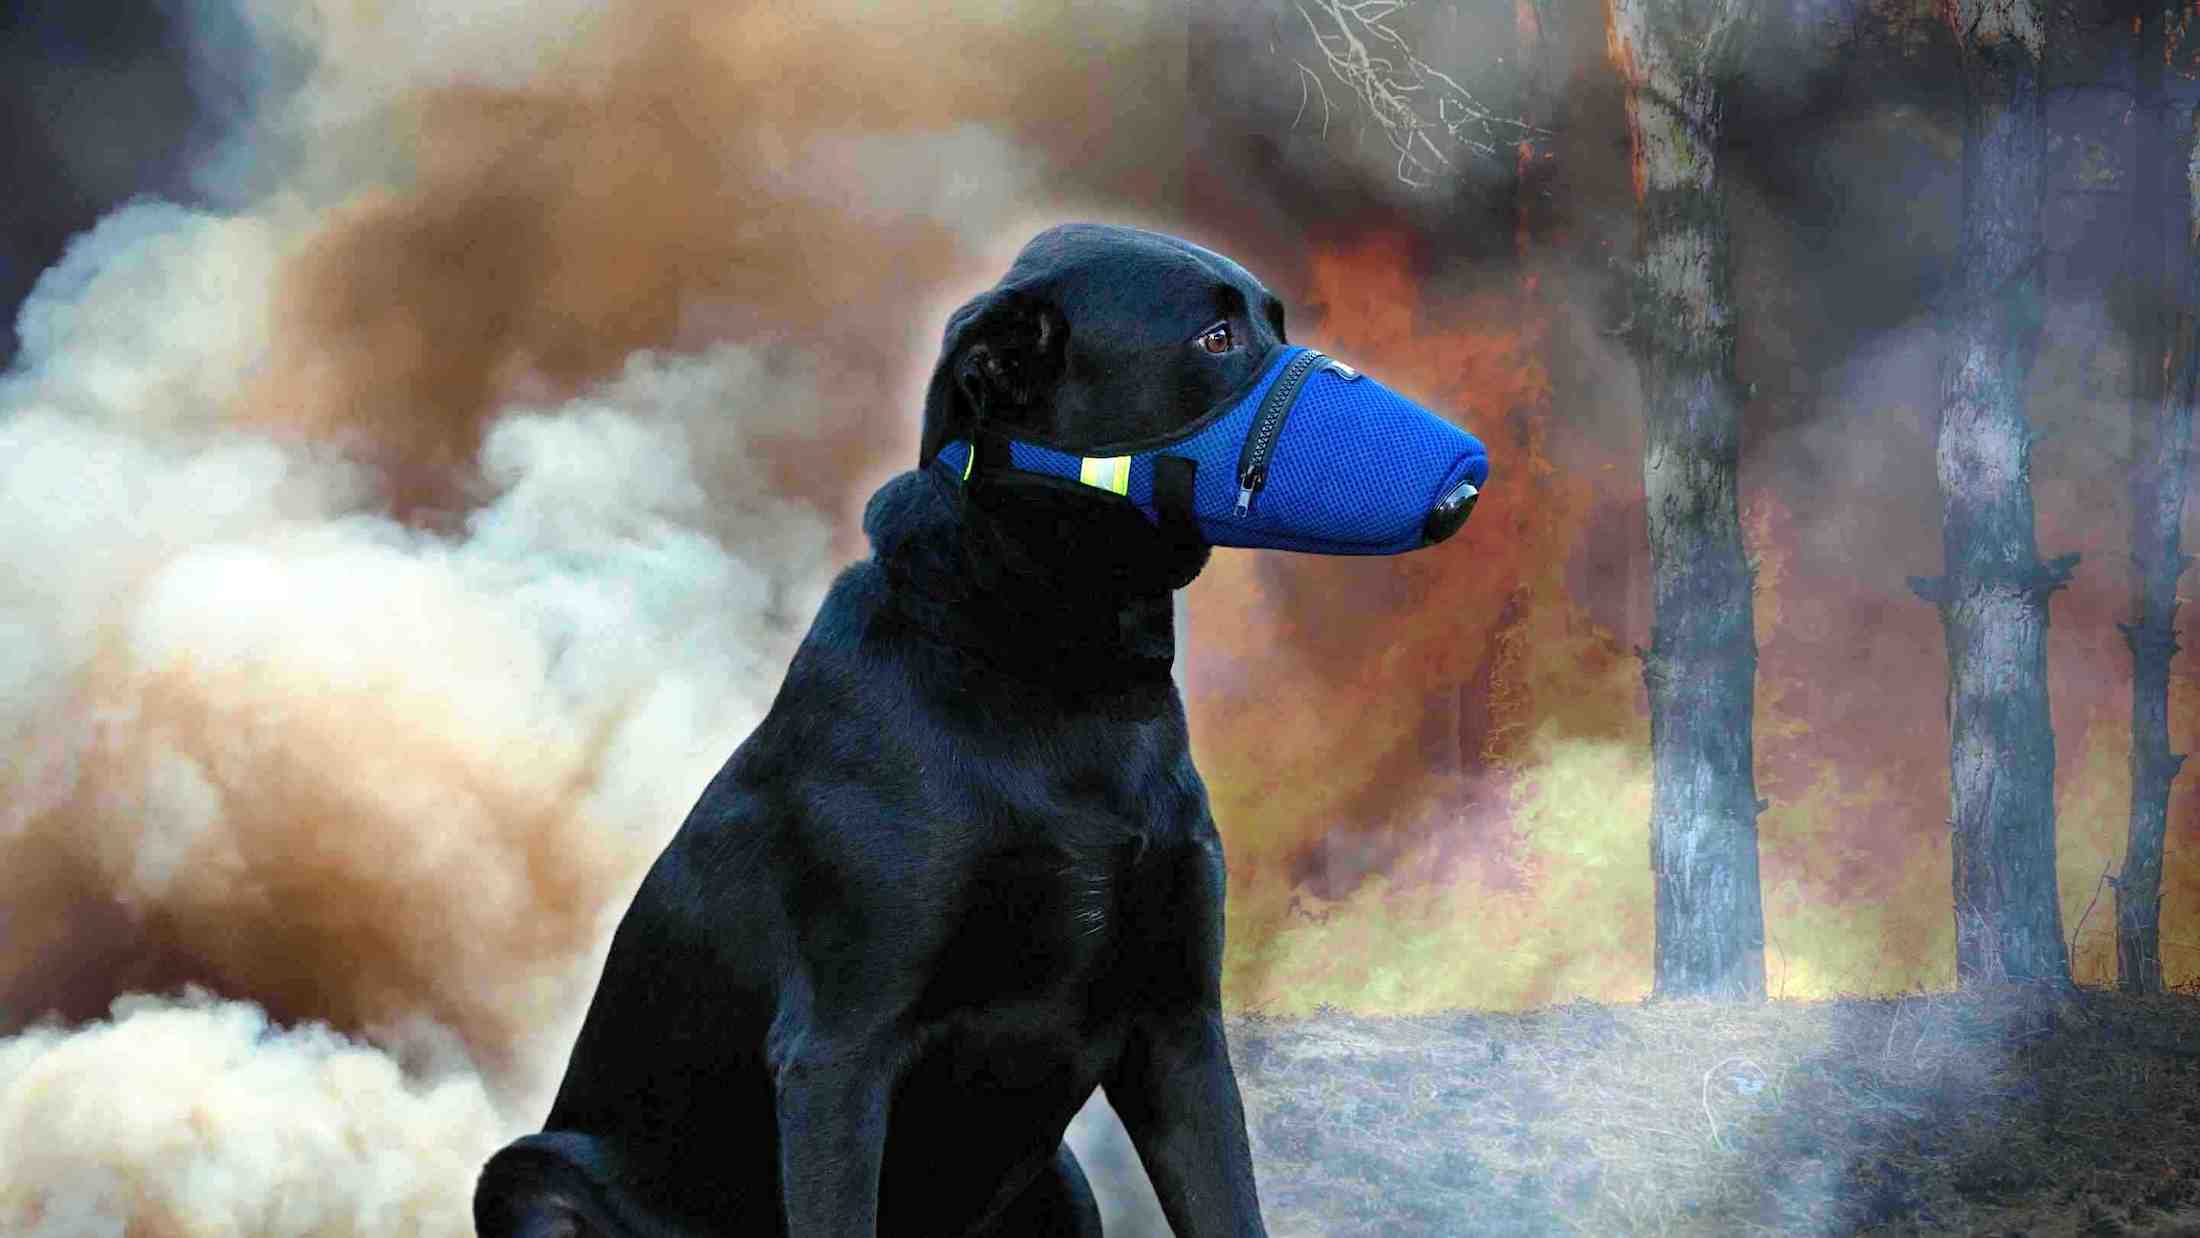 K9 Mask® Dog Air Filter Gesigmasker vir honde vir rook, stof, as, stuifmeel, traangas, rooigety, chemikalieë, traangas, bakterieë, allergene